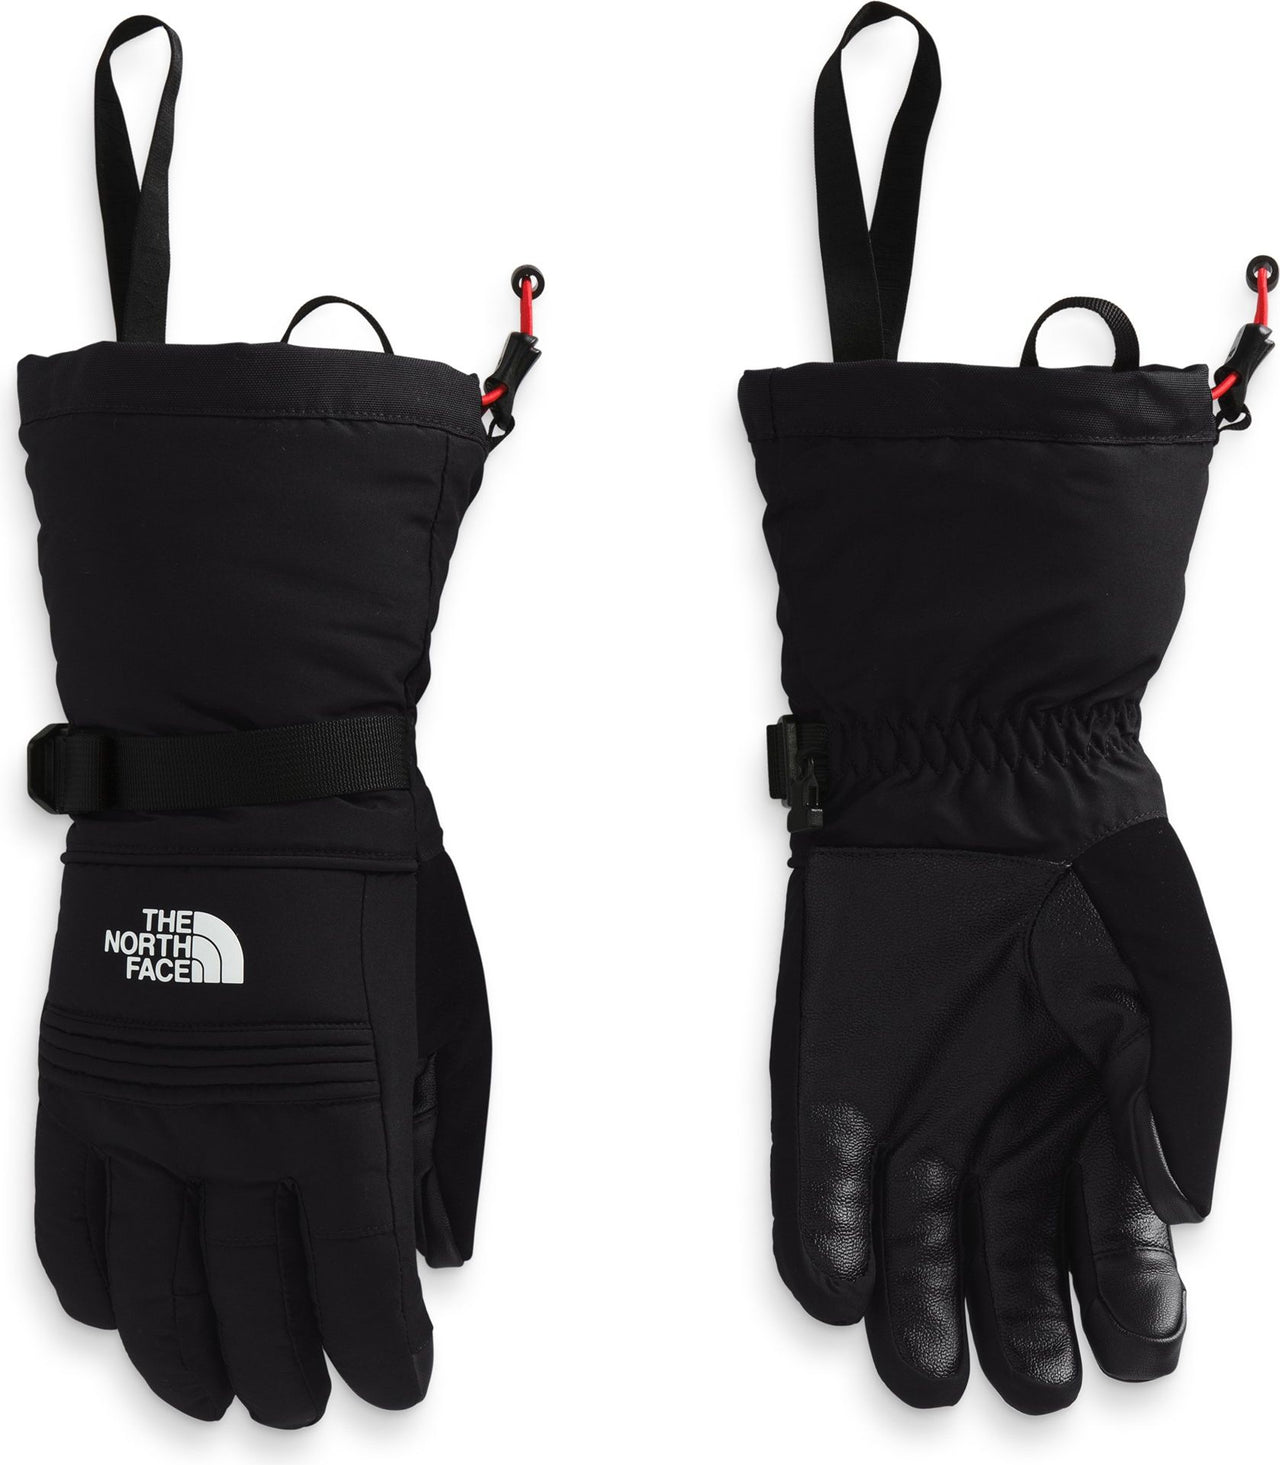 The North Face Accessories Women's Montana Ski Glove Tnf Black